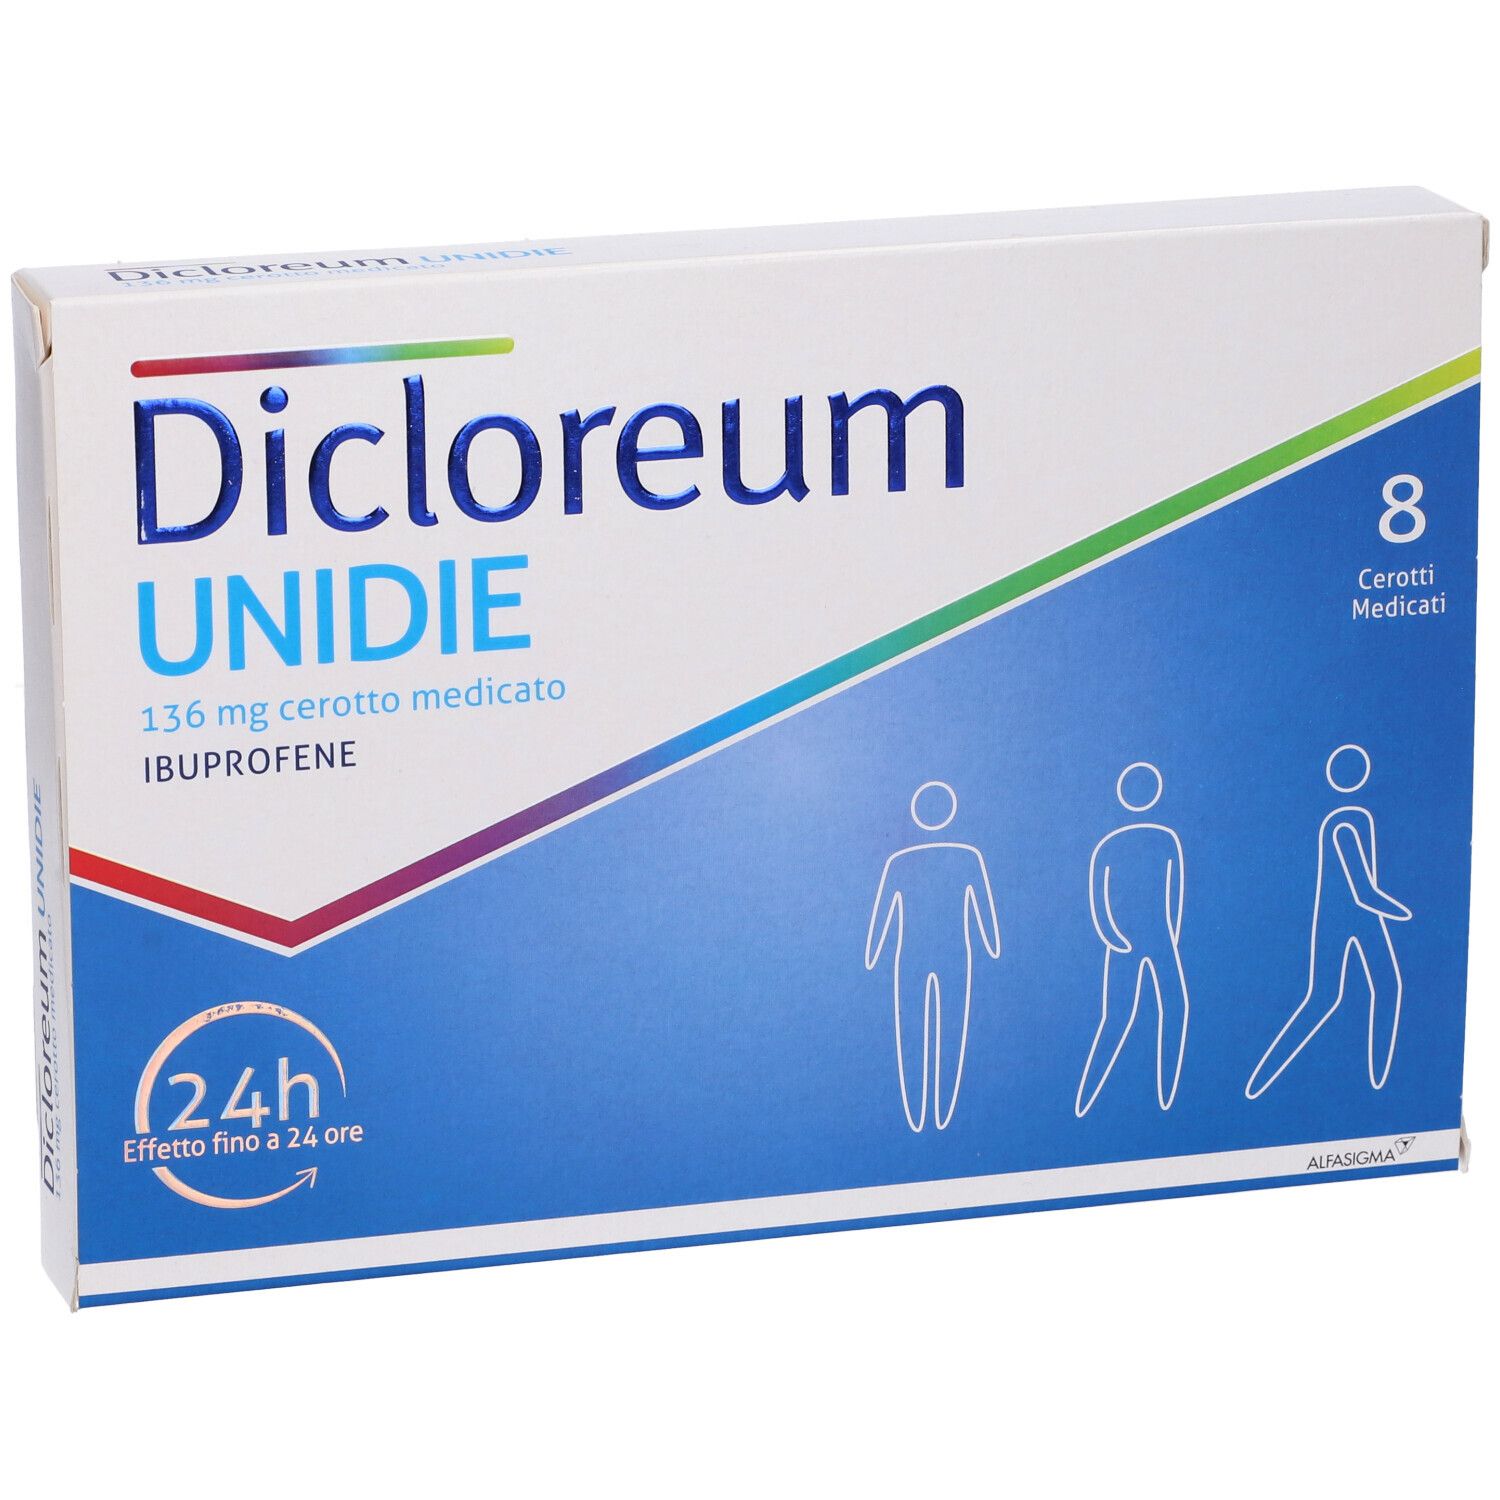 Dicloreum Unidie 136 mg Cerotto medicato